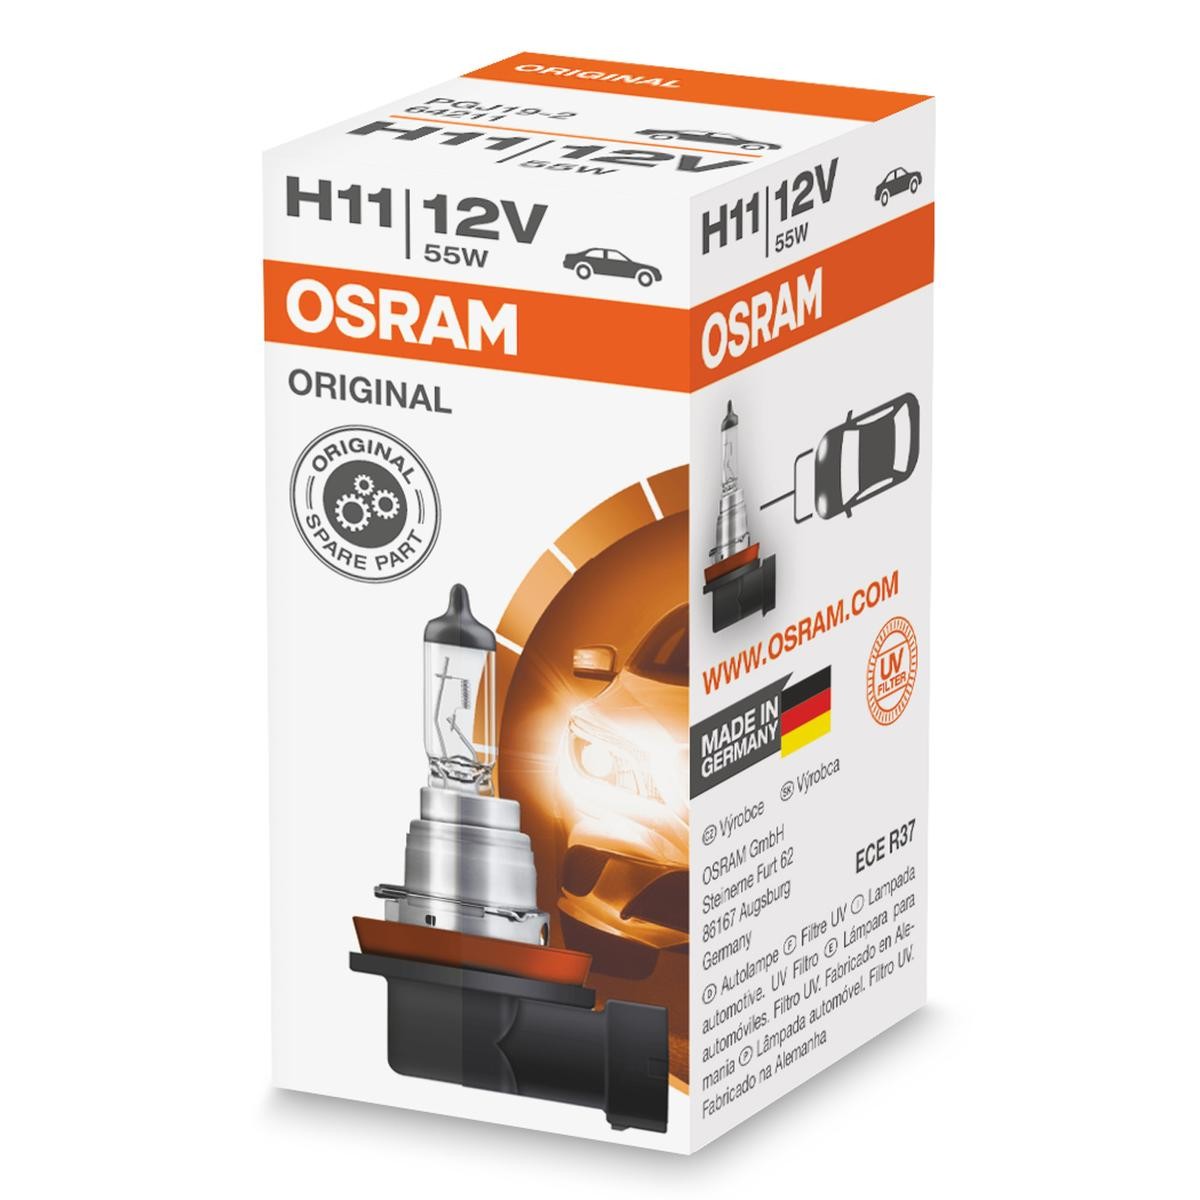 H11 OSRAM ORIGINAL H11 12V 55W3200K Halogen Glühlampe, Fernscheinwerfer 64211 günstig kaufen